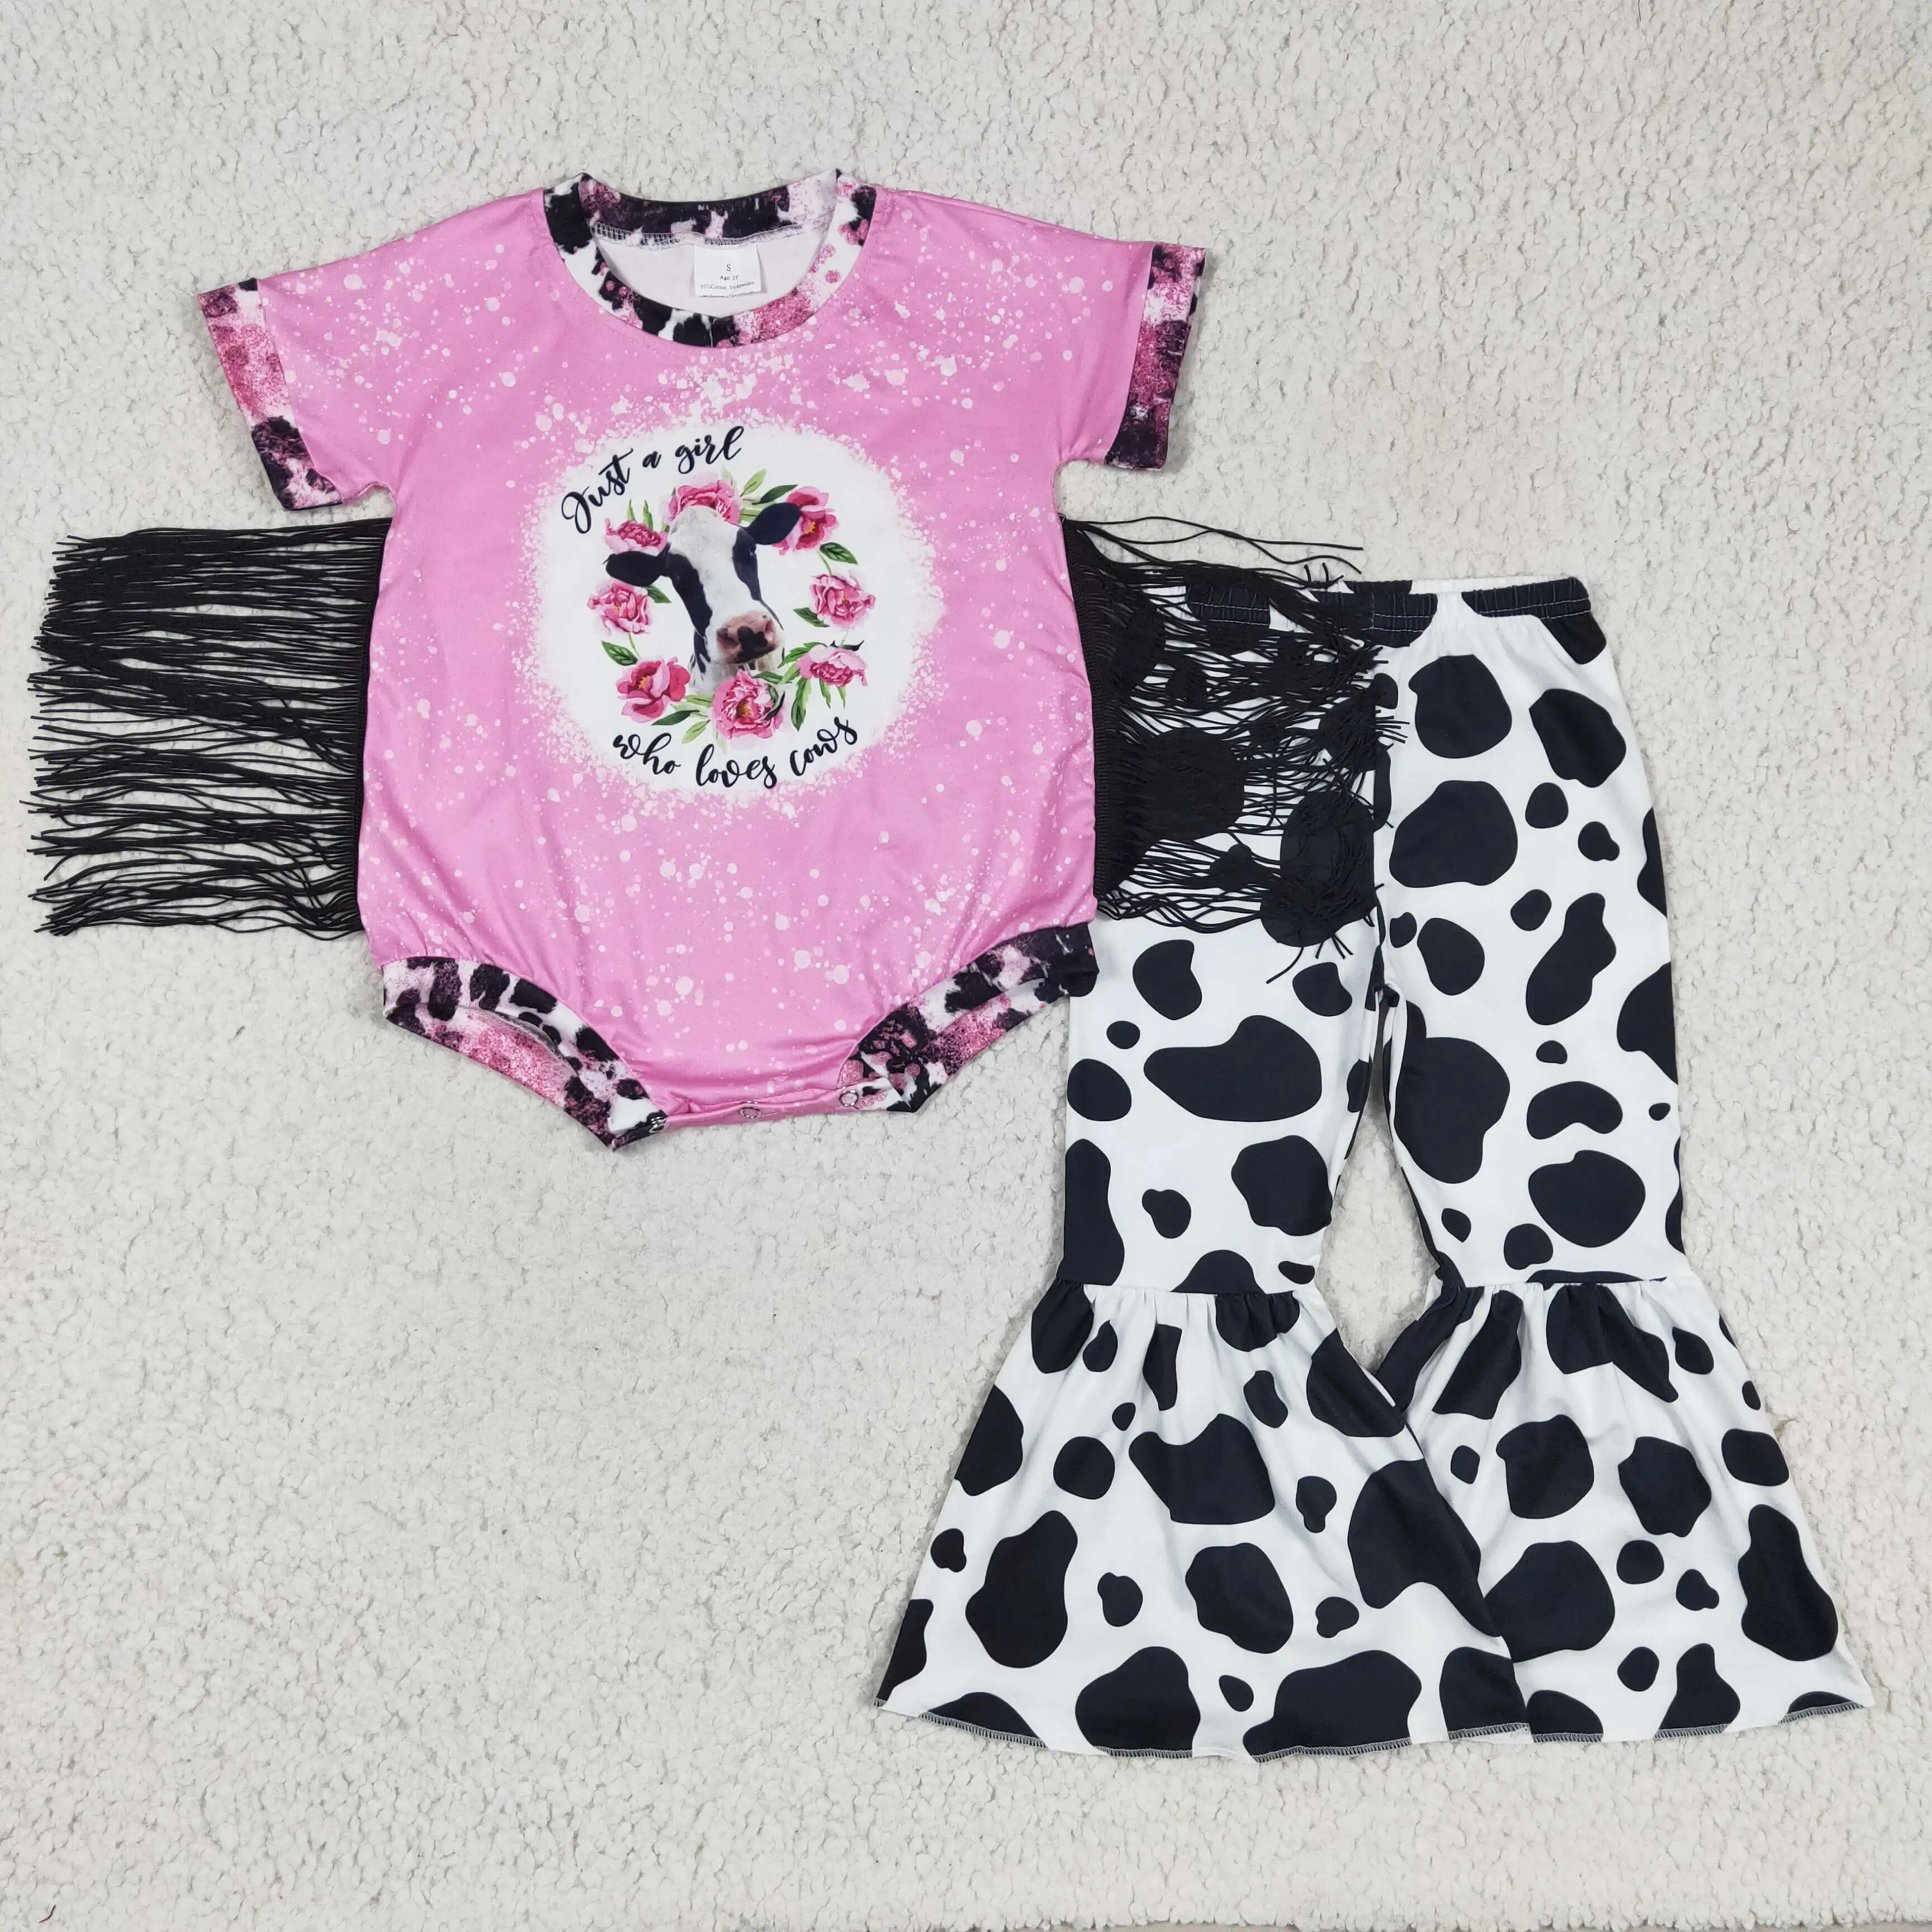 Качественная продукция RTS, новая одежда для новорожденных телок с розовым цветочным рисунком, весенняя одежда для маленьких девочек, детские комбинезоны . ' - ' . 0